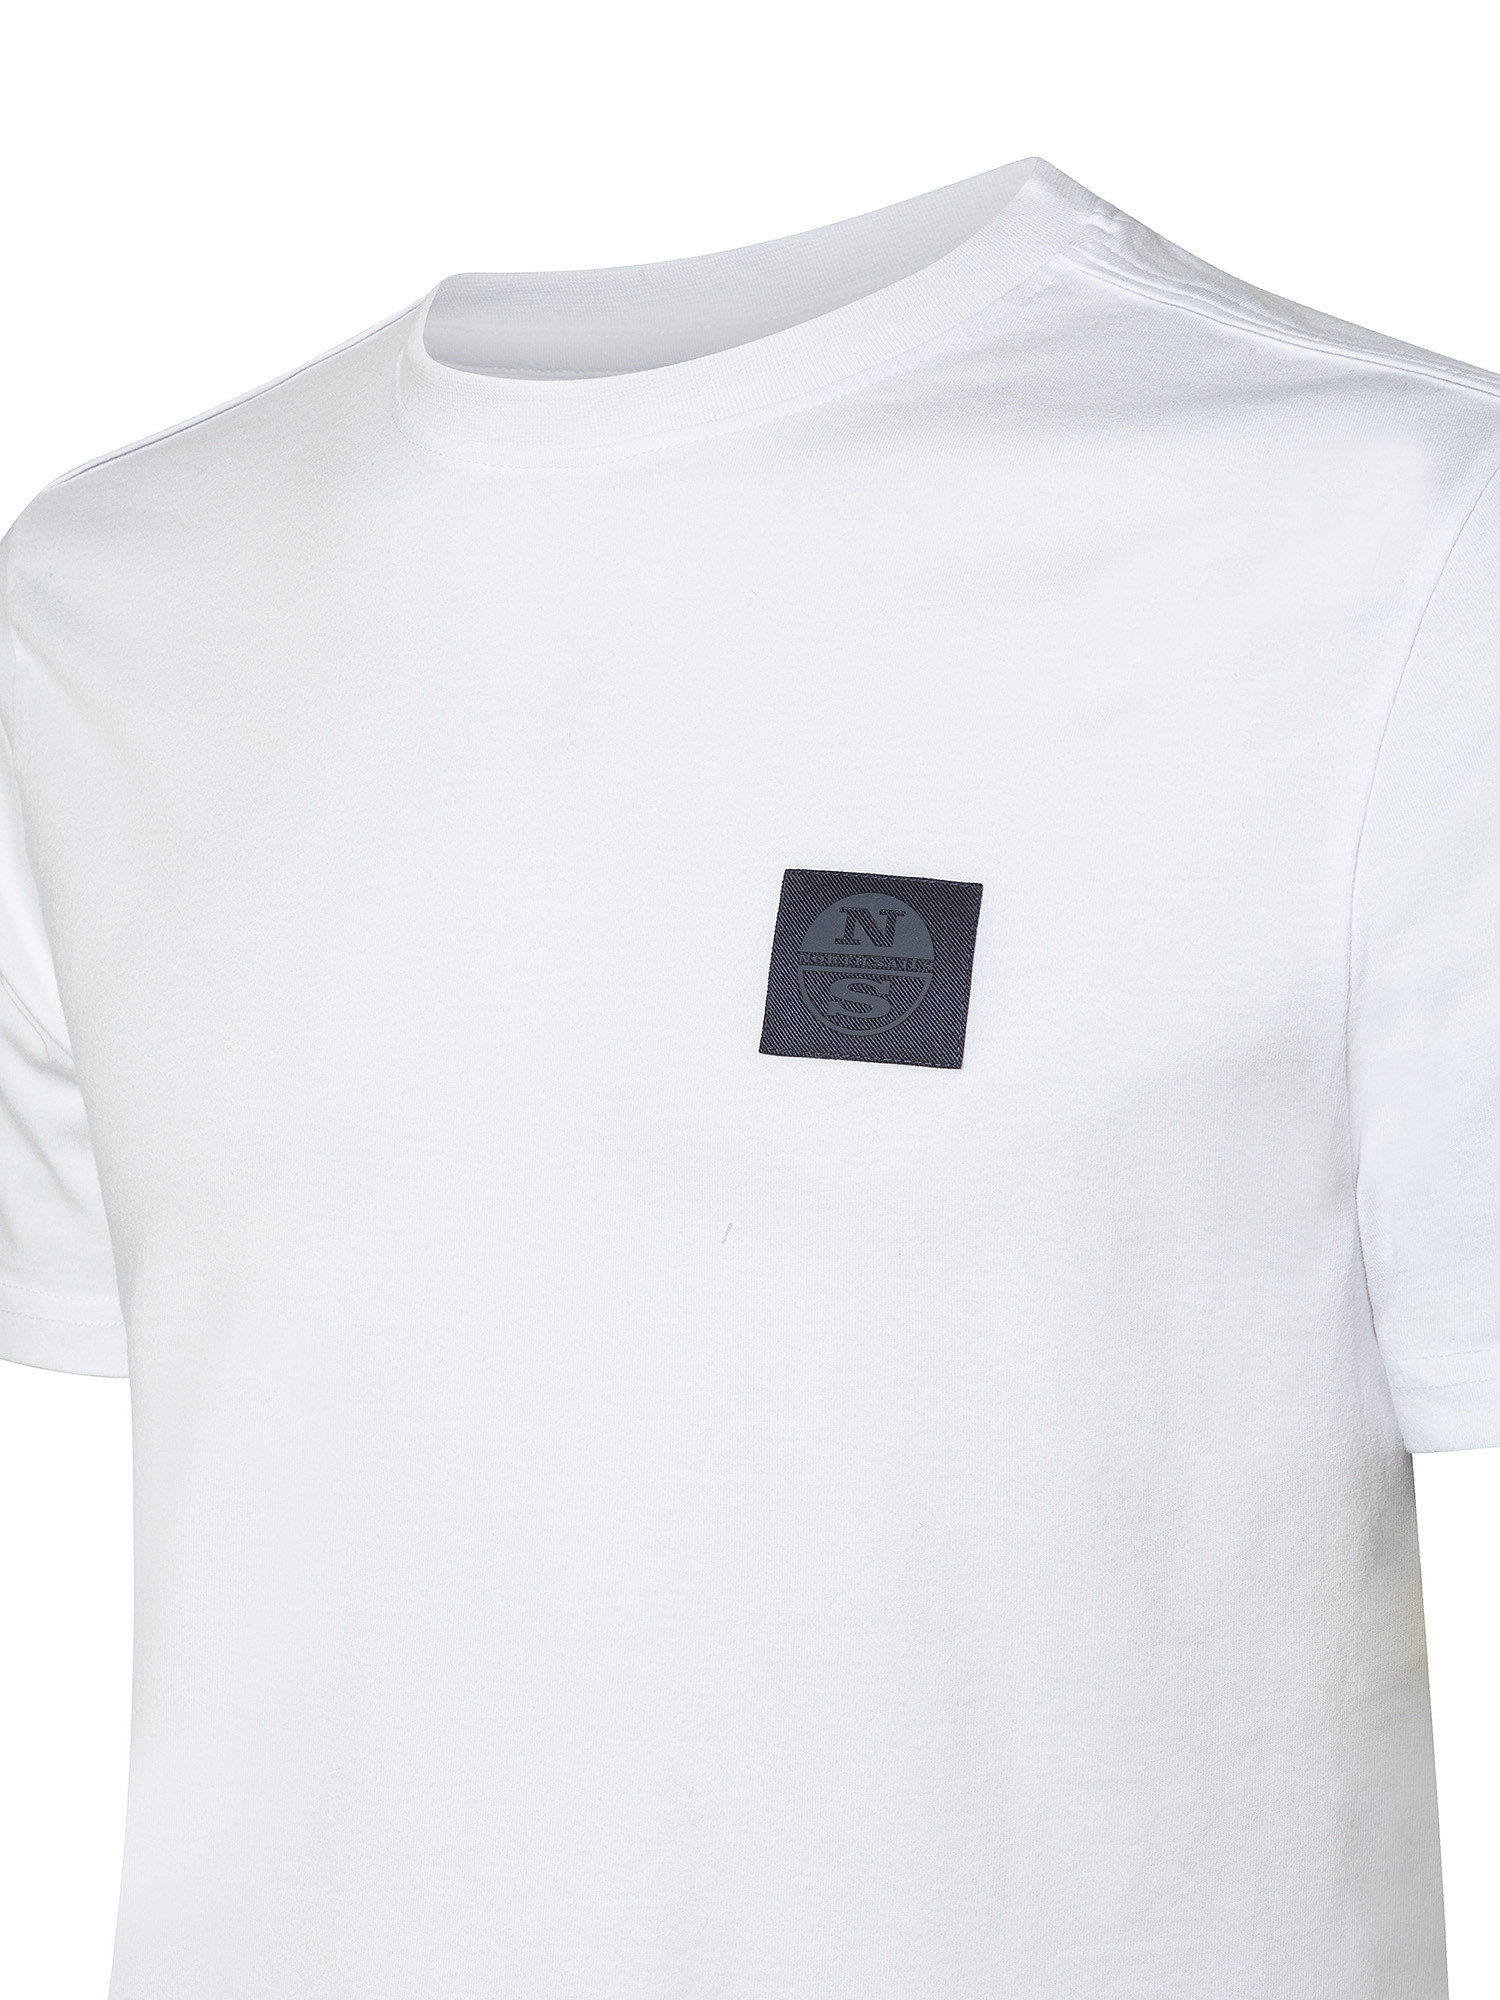 Short sleeve t-shirt with logo, White, large image number 2